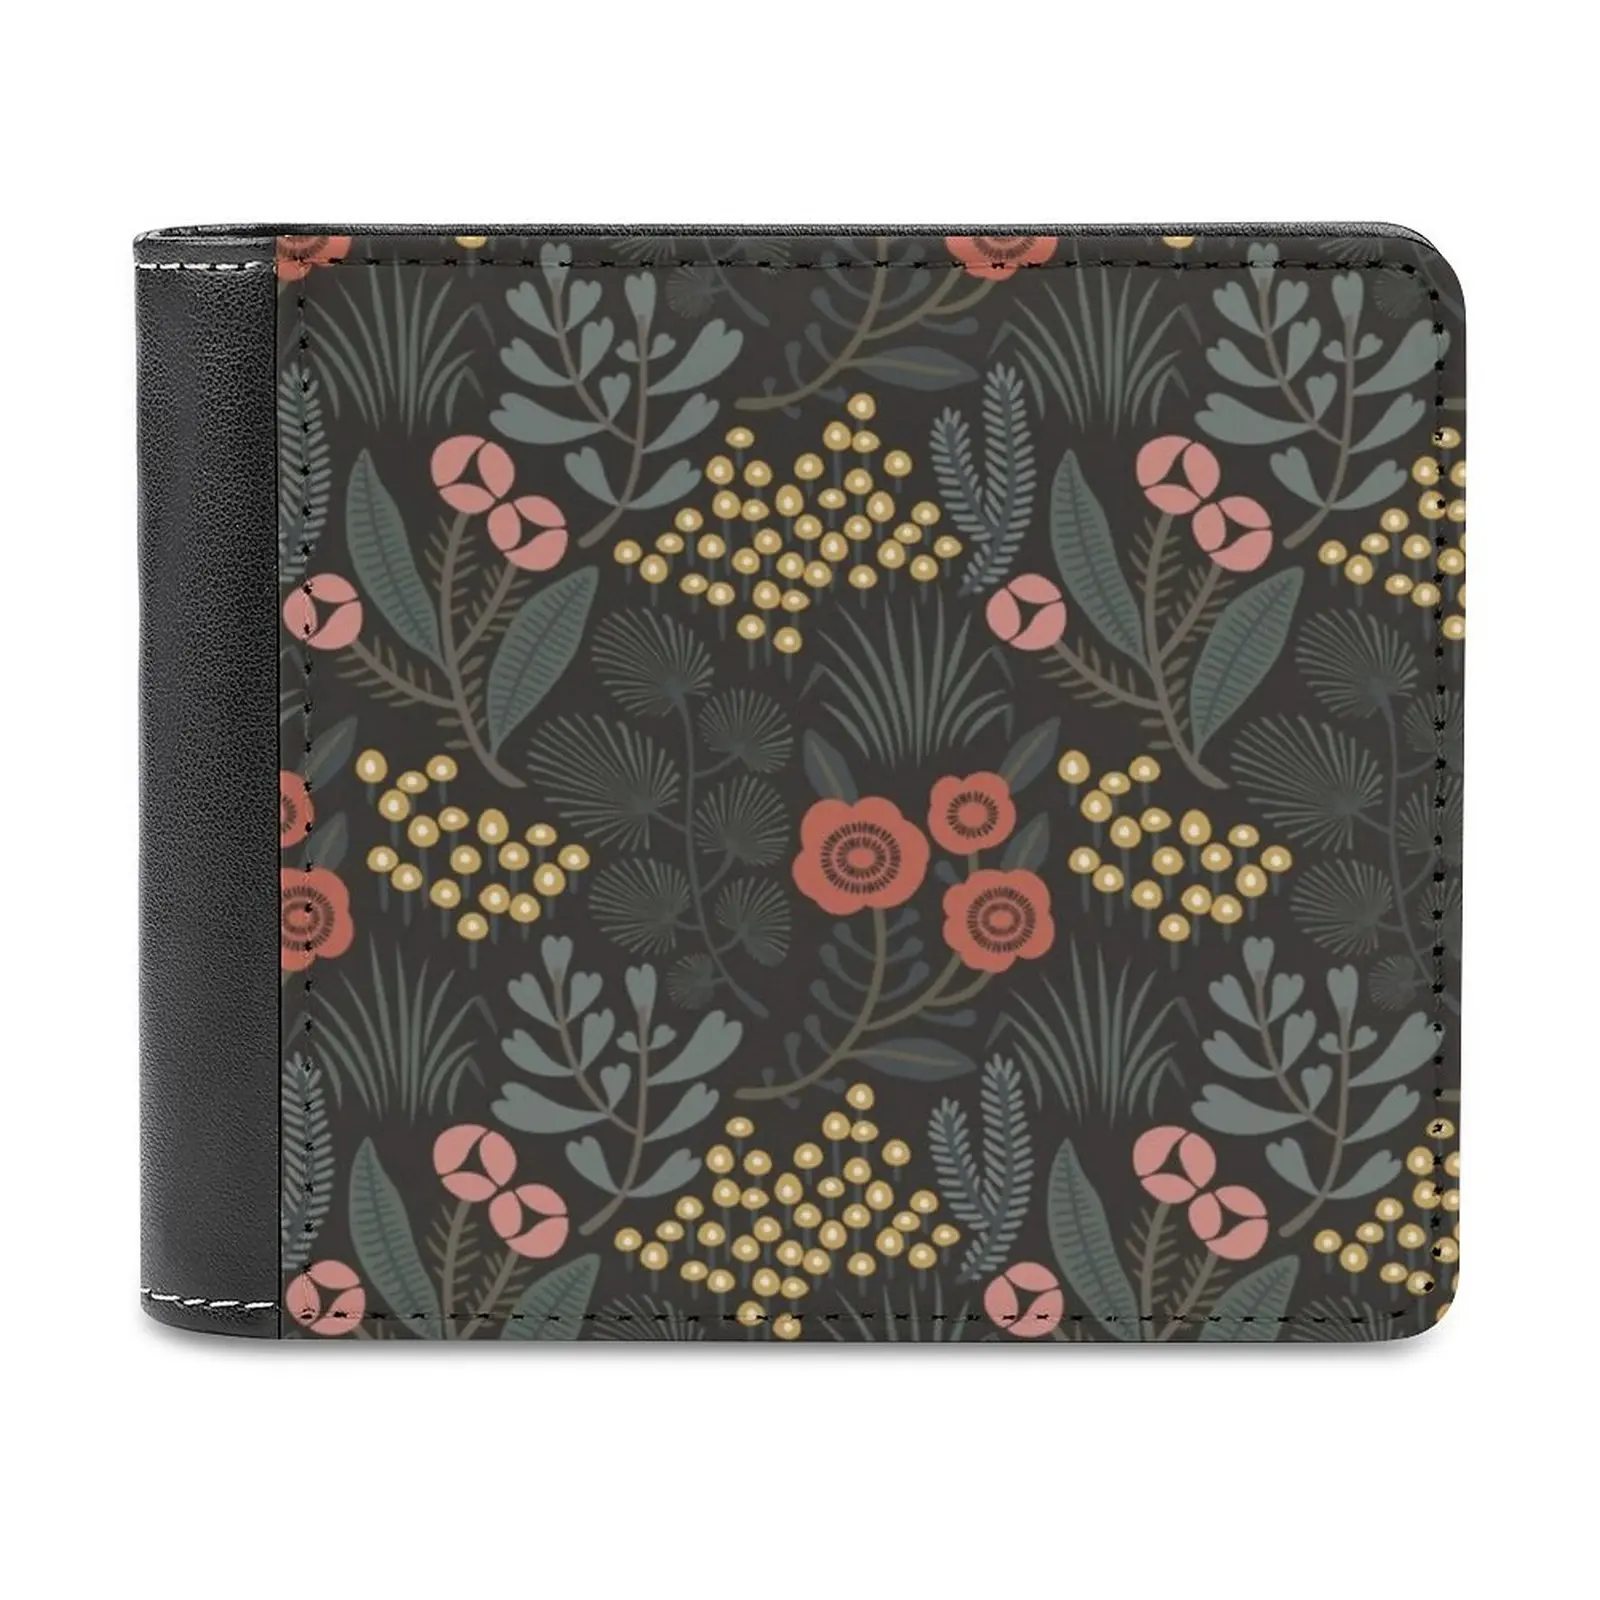 

Кожаный кошелек ночного сада для мужчин, классический черный бумажник, кредитница, модный мужской кошелек в винтажном стиле ретро с цветочным узором